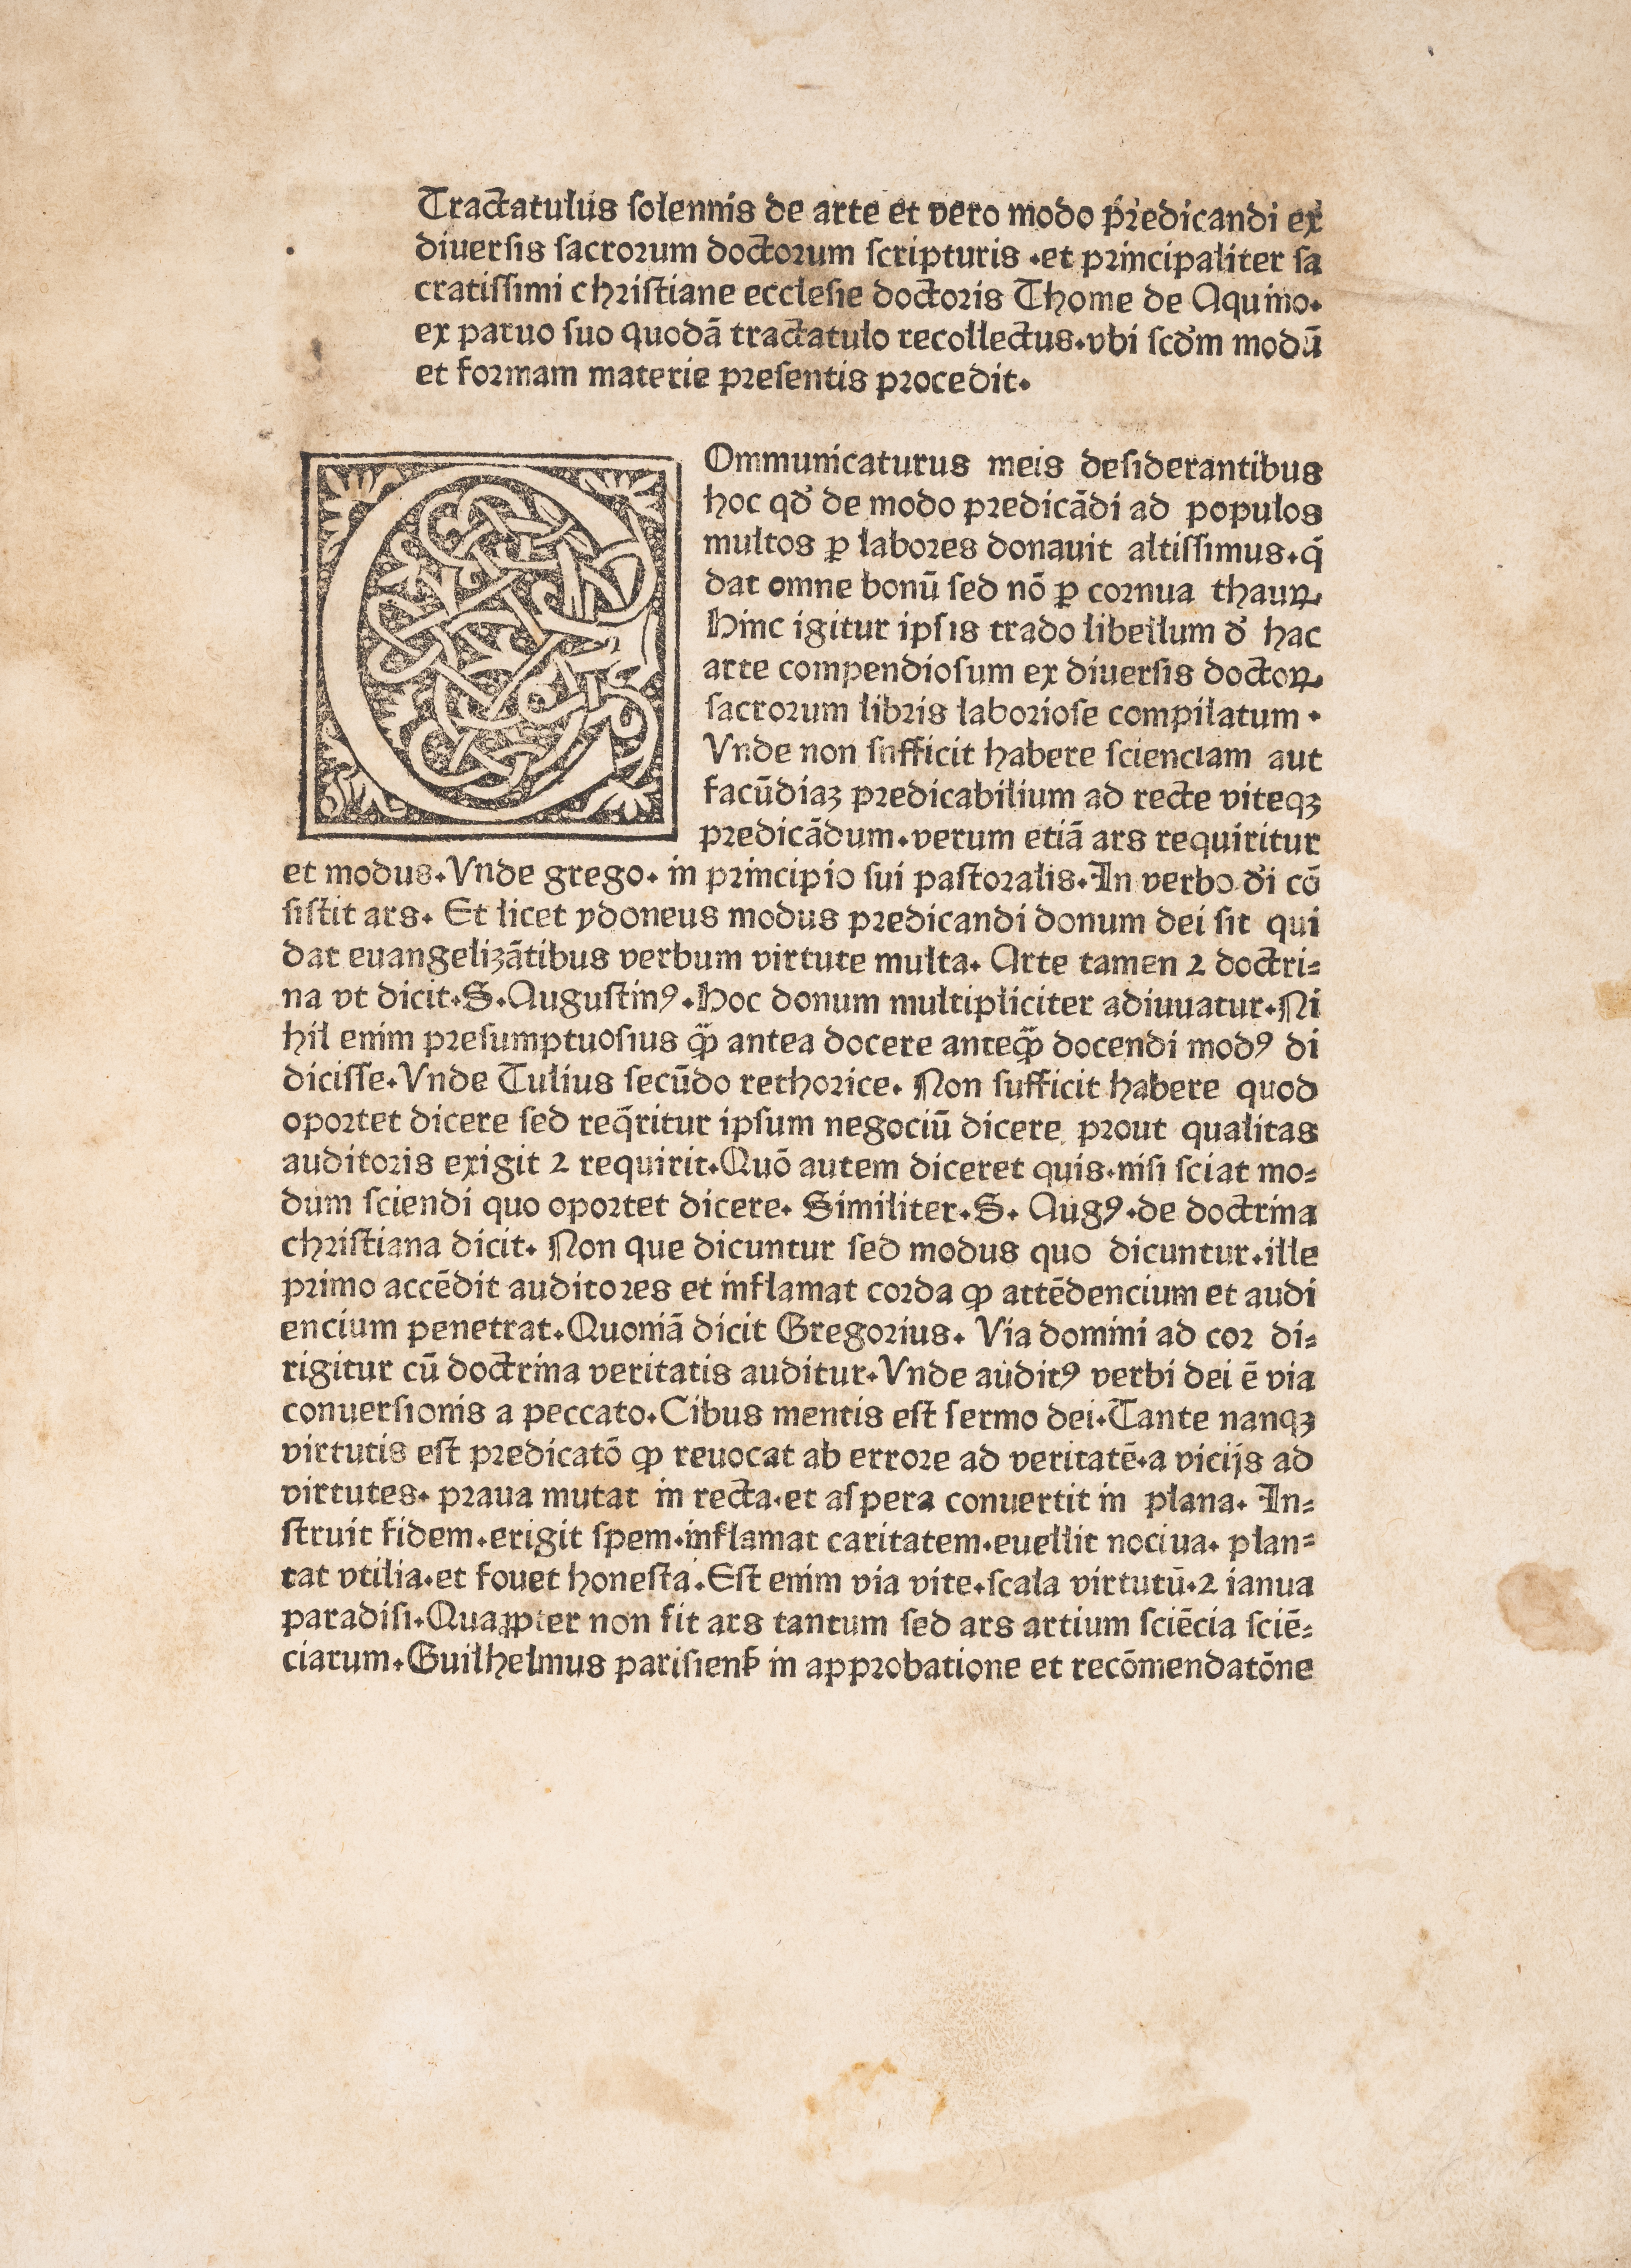 Aquinas (Thomas) Tractatulus solemnis de arte et vero modo predicandi, rare at auction, Strassbur...